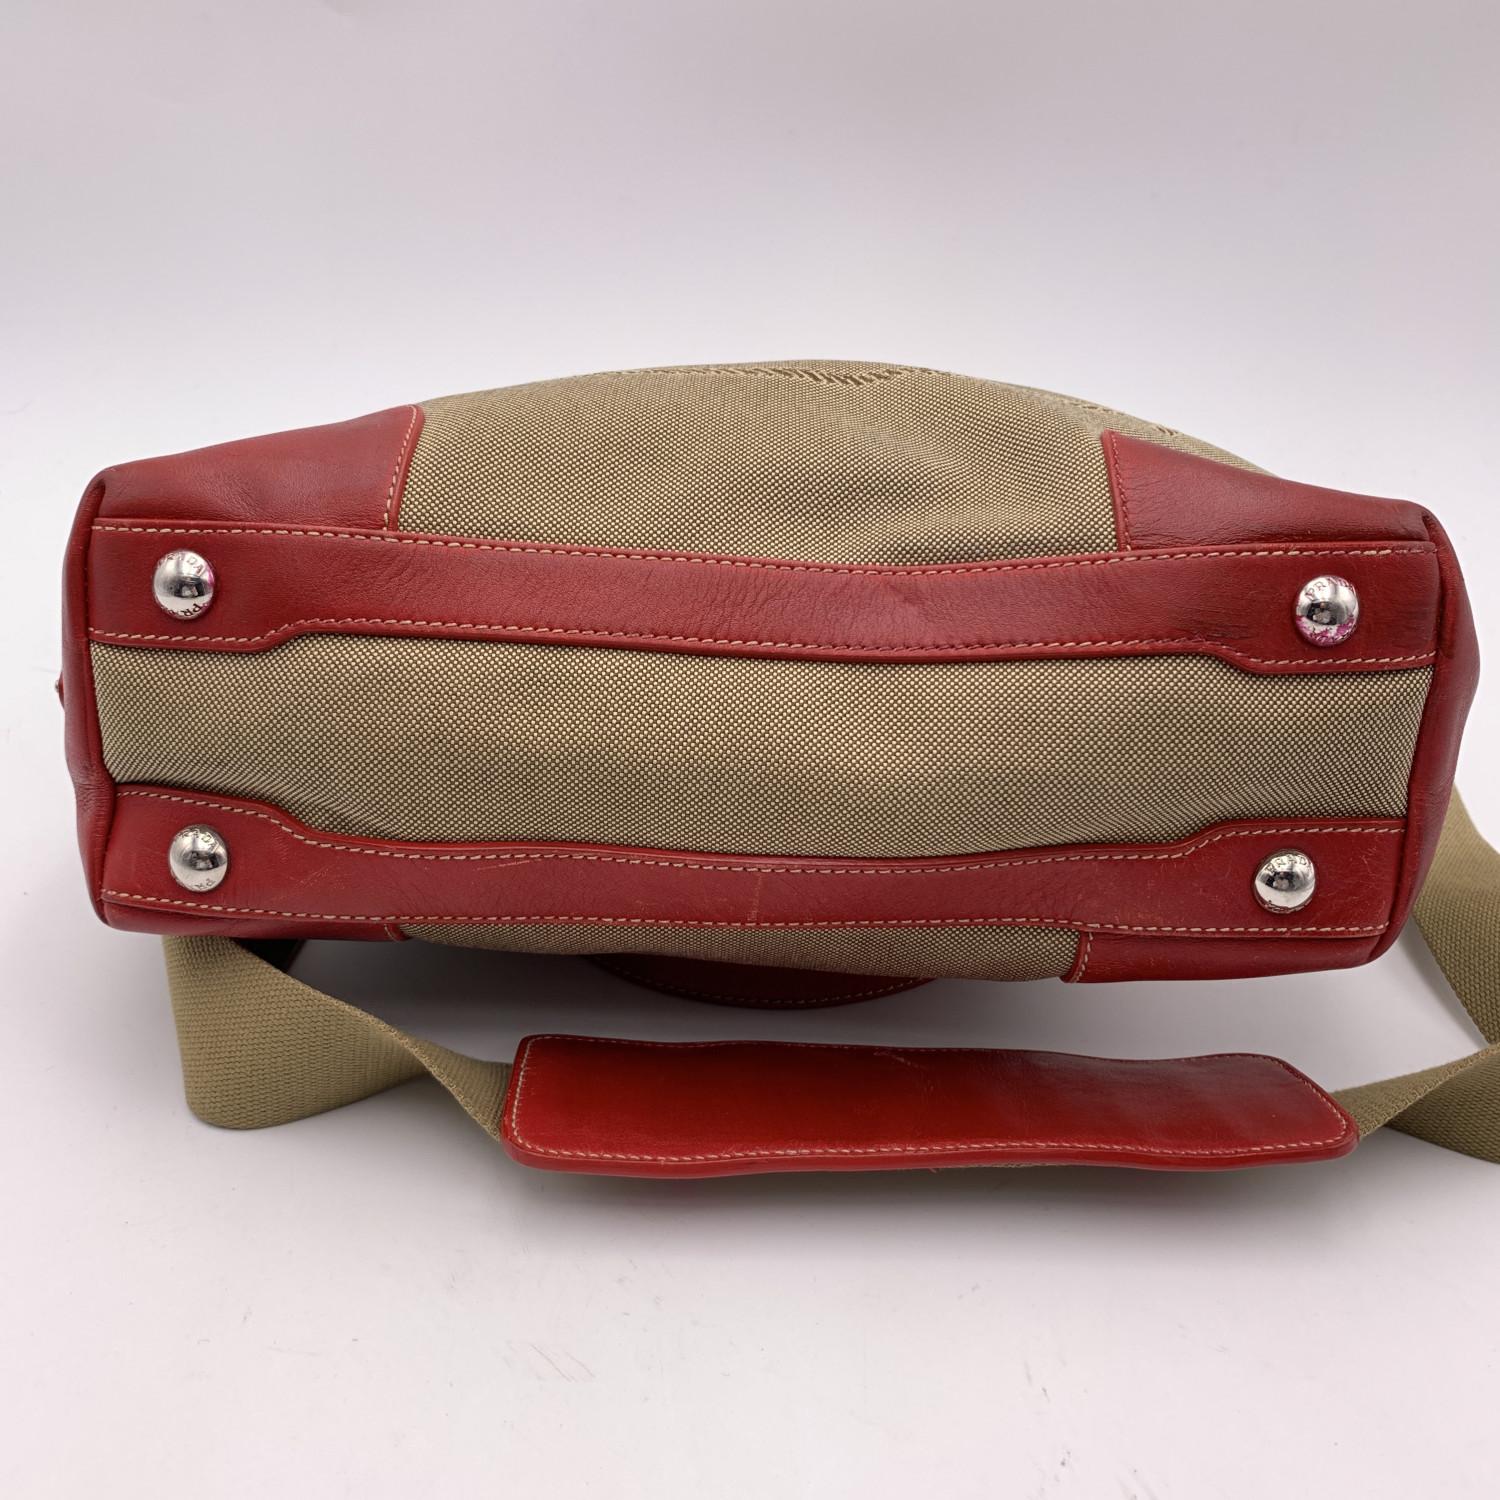 prada red leather shoulder bag